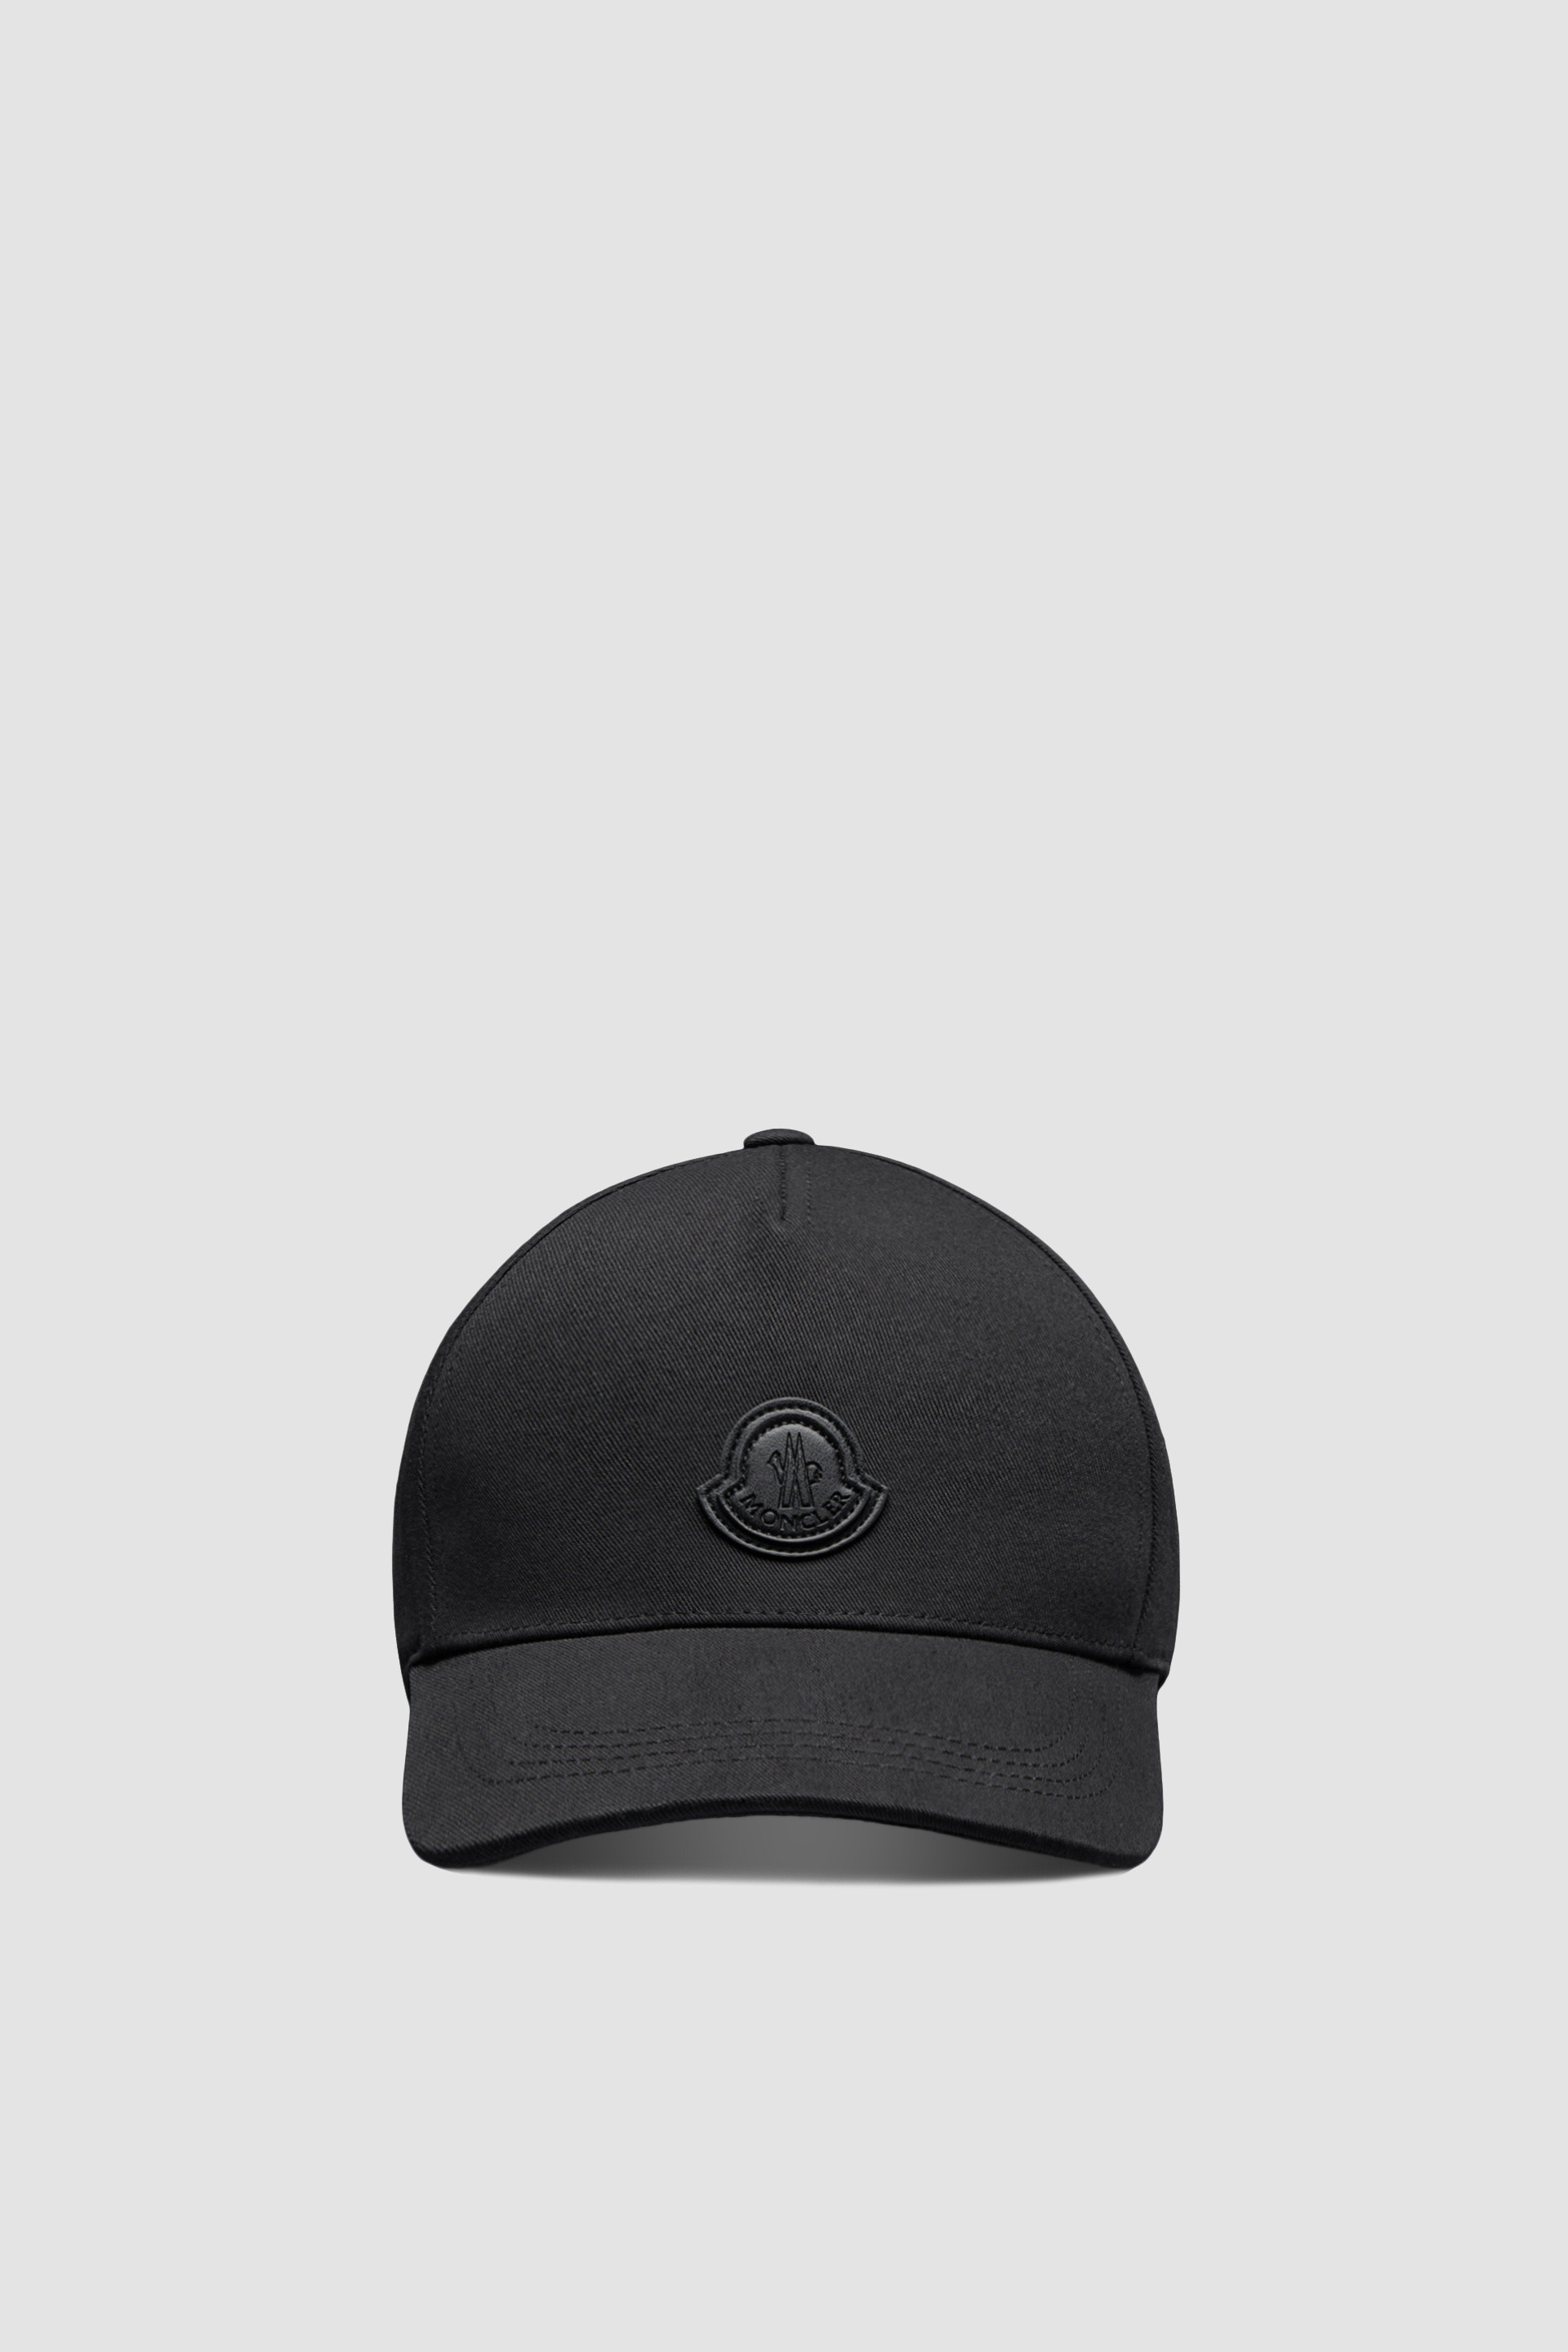 22,068円■新品 本物■モンクレール ベースボールキャップ BB CAP 帽子 黒 メンズ